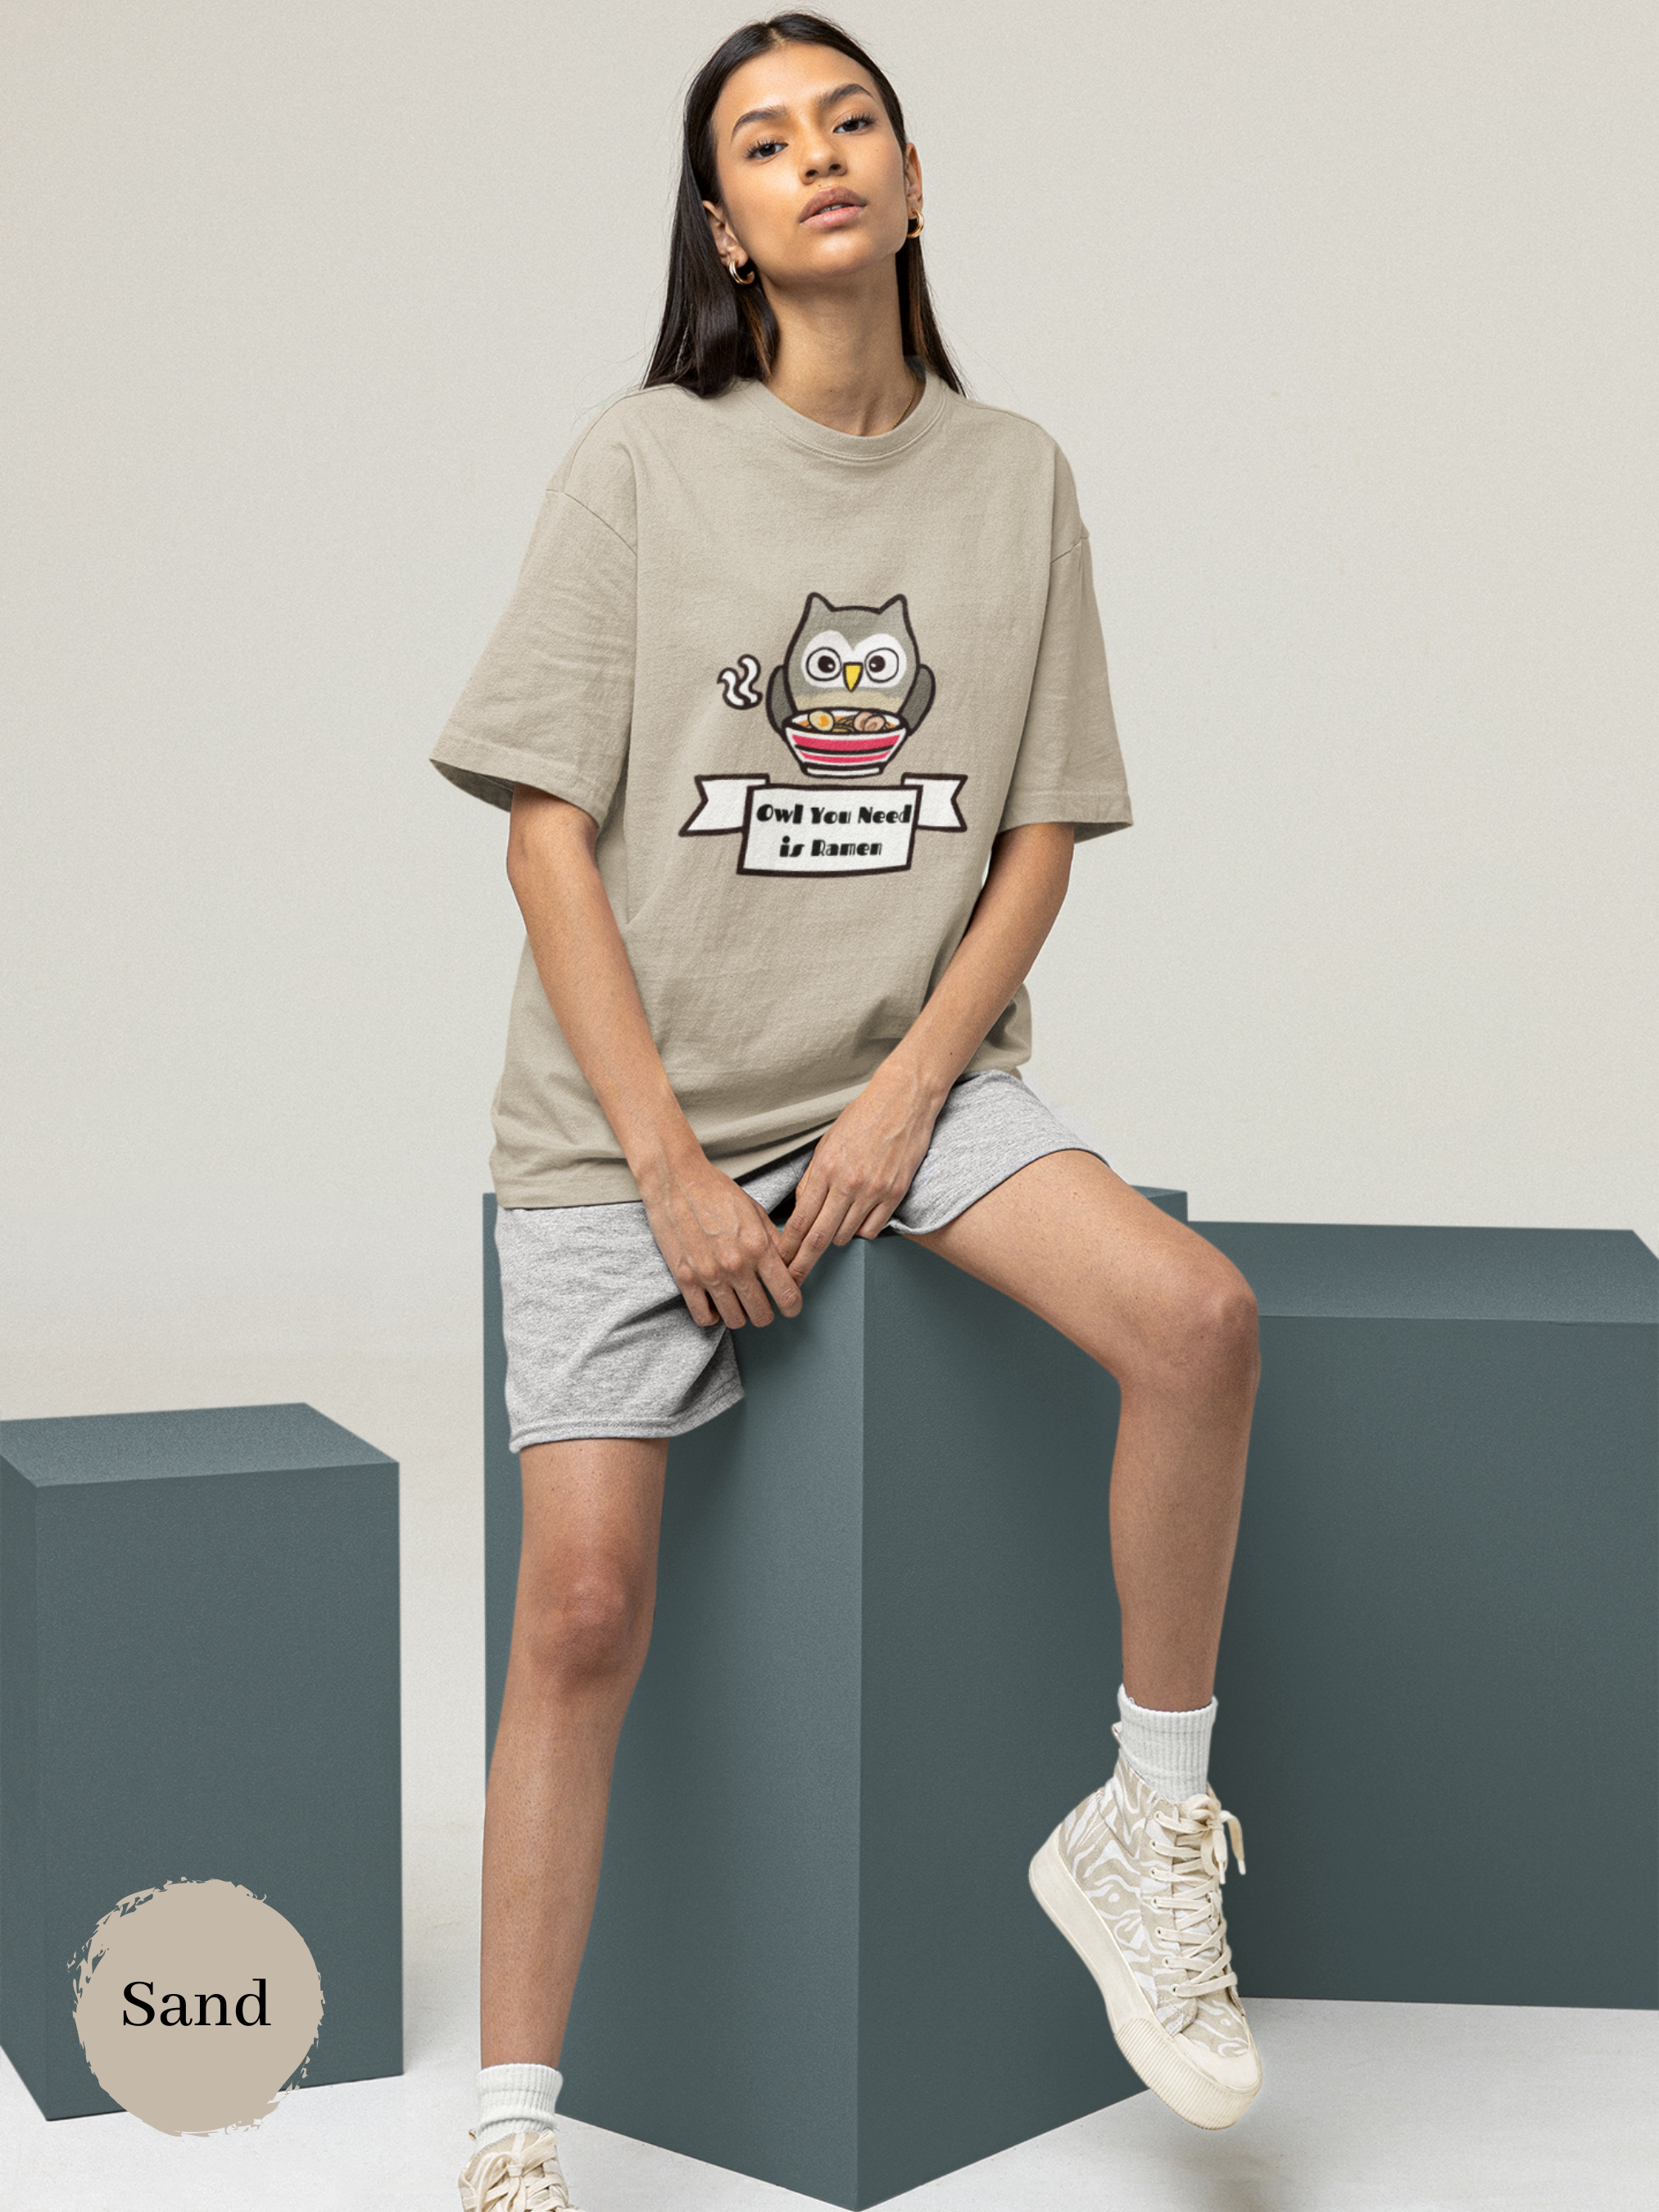 Ramen T-Shirt: Owl Need is Ramen - Japanese Foodie Shirt with Ramen Art